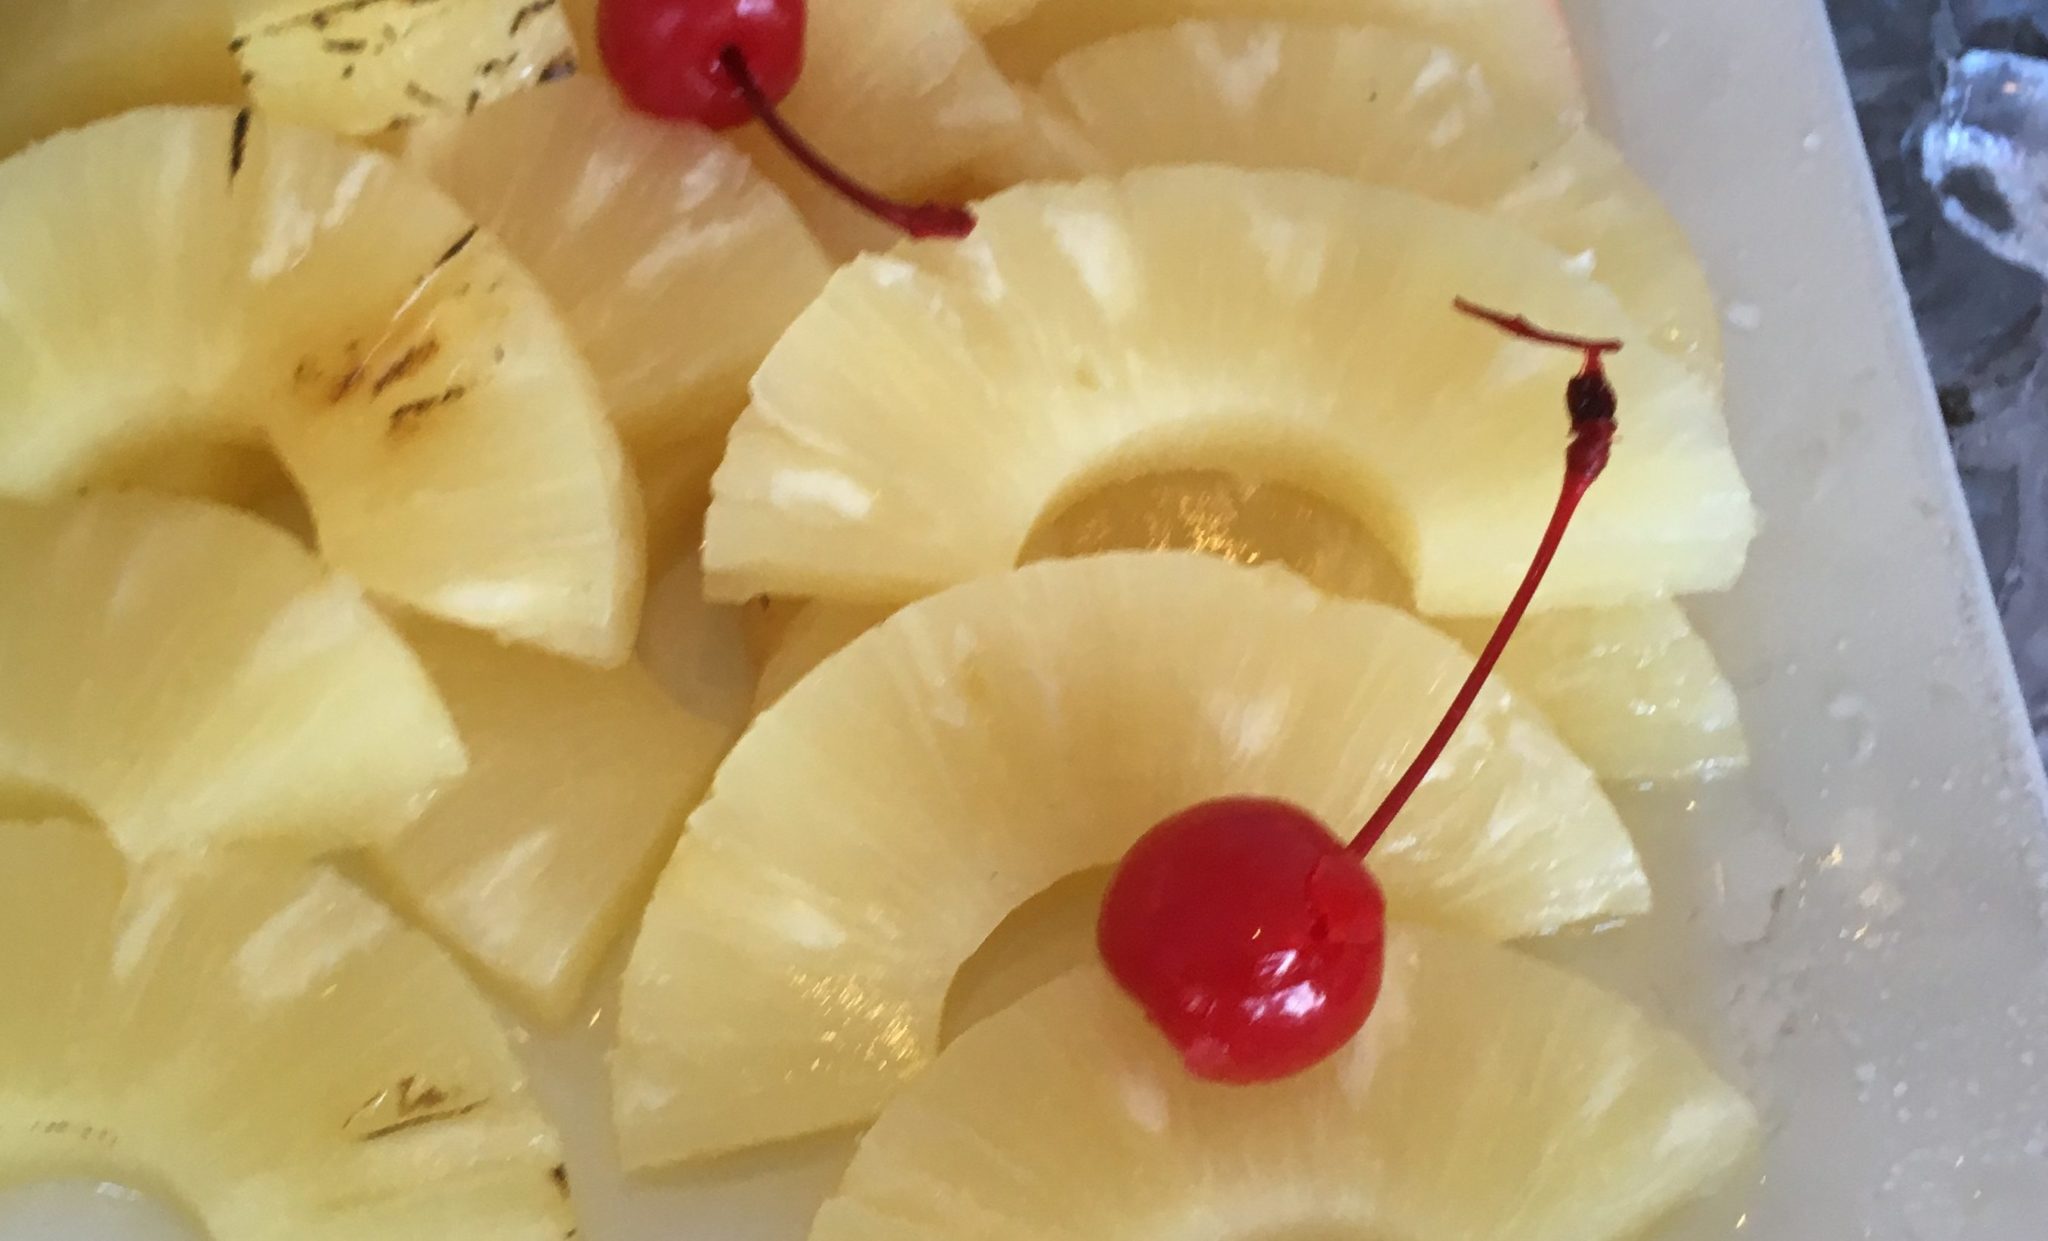 pinapple slices with maraschino cherries